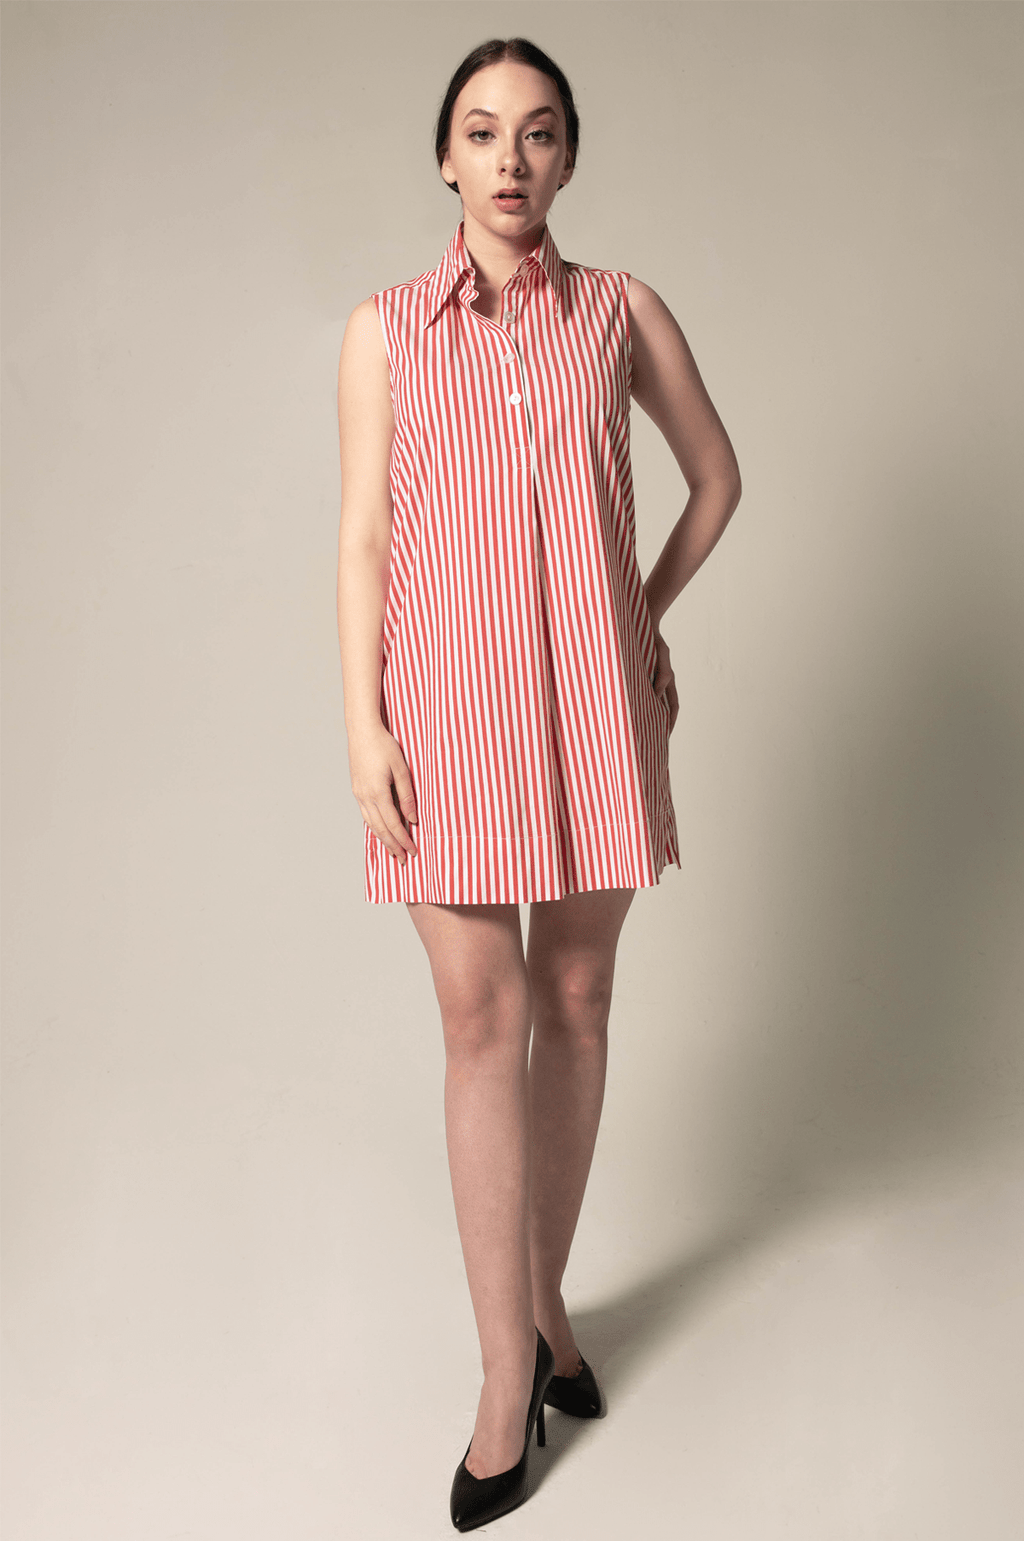 Le Réussi Women's Dress Italian Cotton Red Stripe Sleeveless Dress | Le Réussi